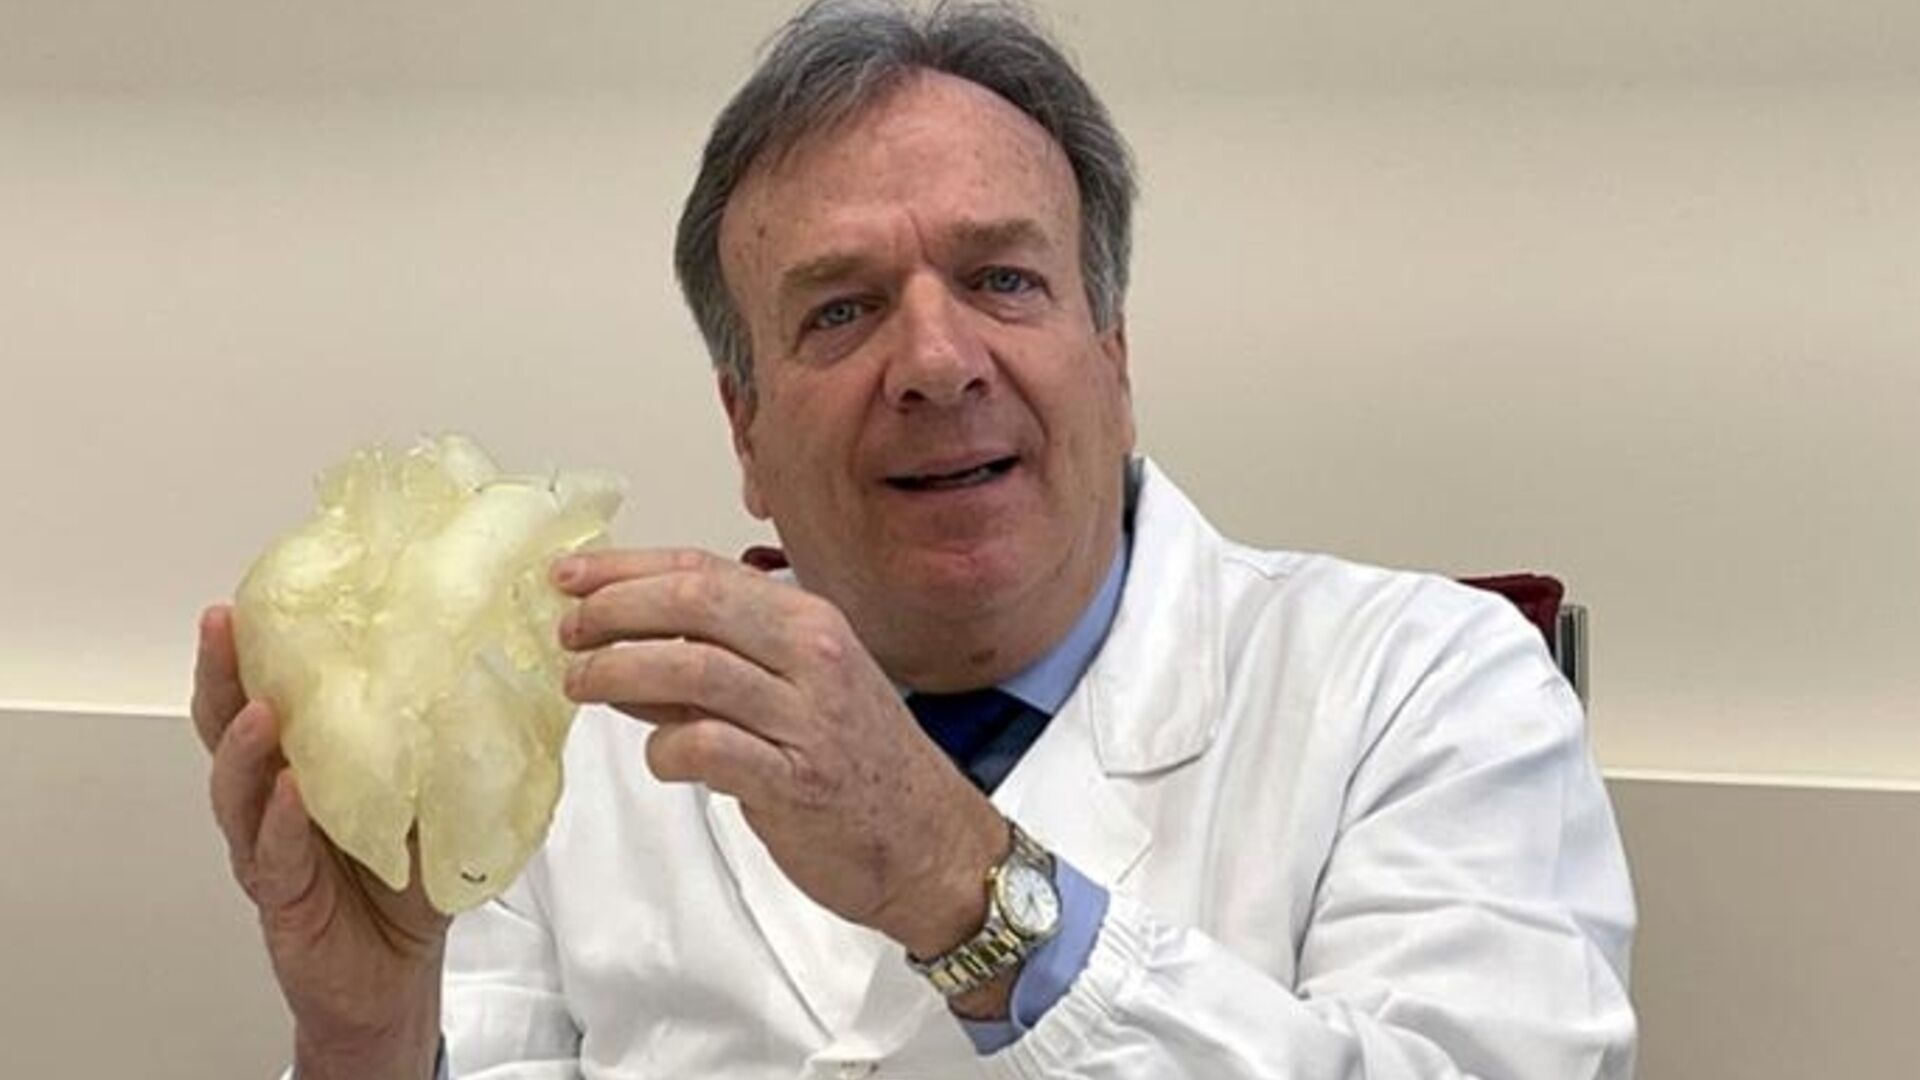 Gino Gerosa: intervista al chirurgo dell’Università di Padova che coordinerà medici, ingegneri, biologi ed esperti dei materiali con 50 milioni di euro di budget per realizzare il primo cuore artificiale italiano